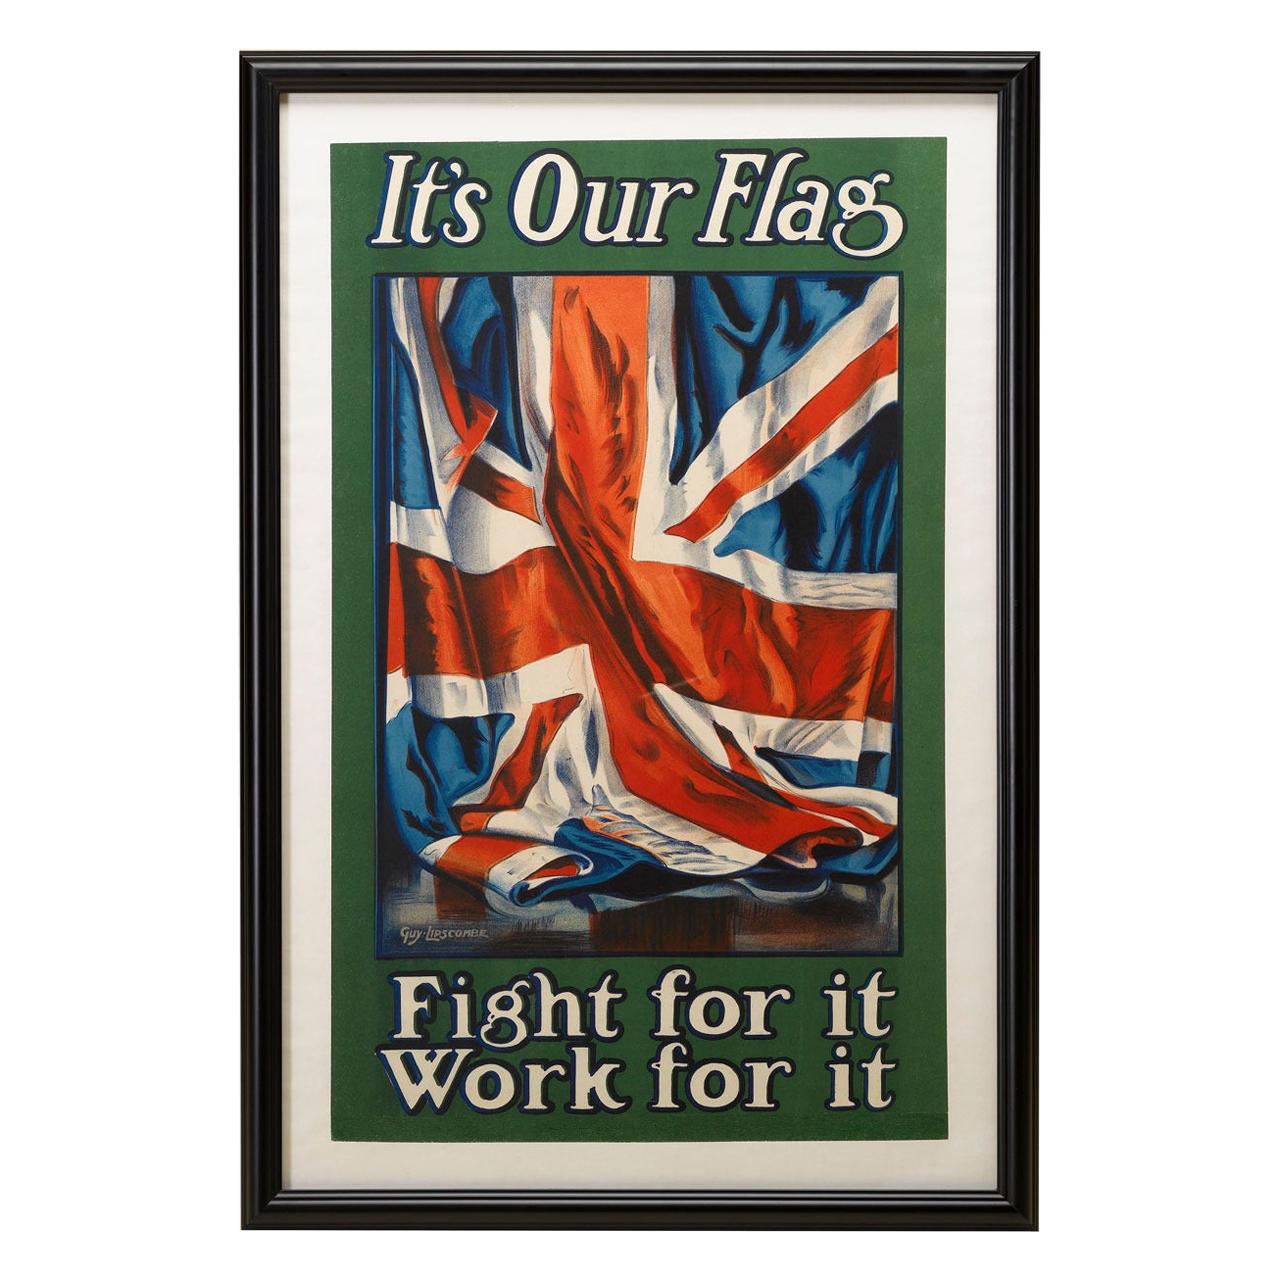 British Union Jack Antique Military Recruitment Poster, 1906